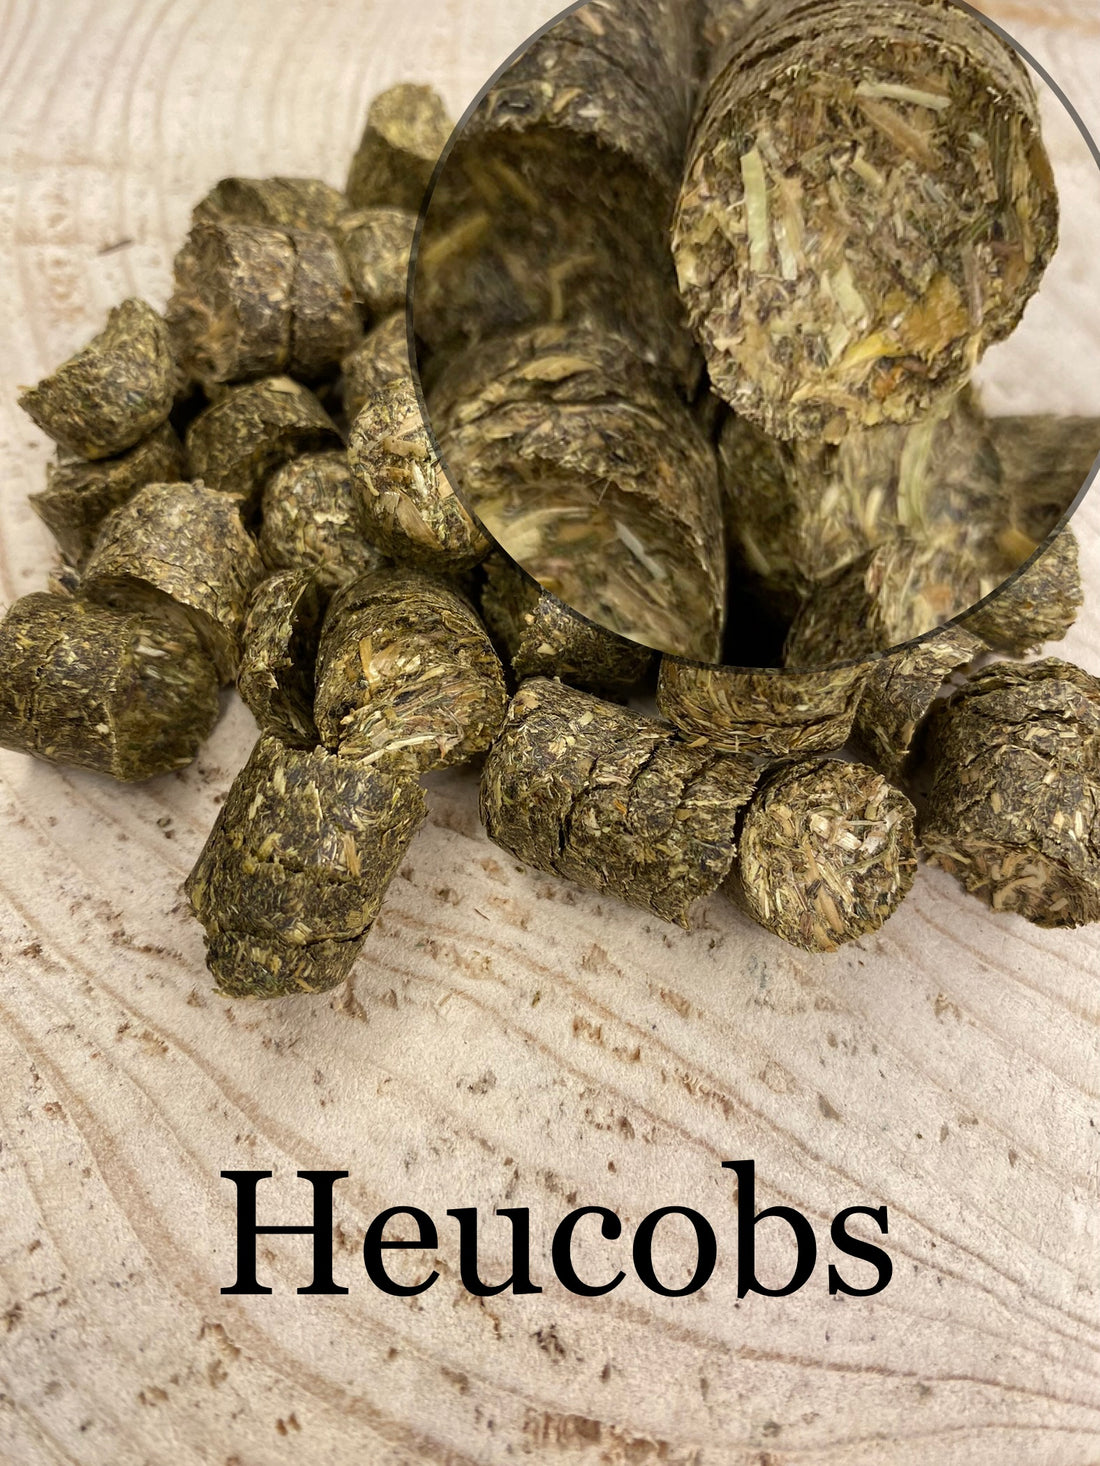 Heucobs